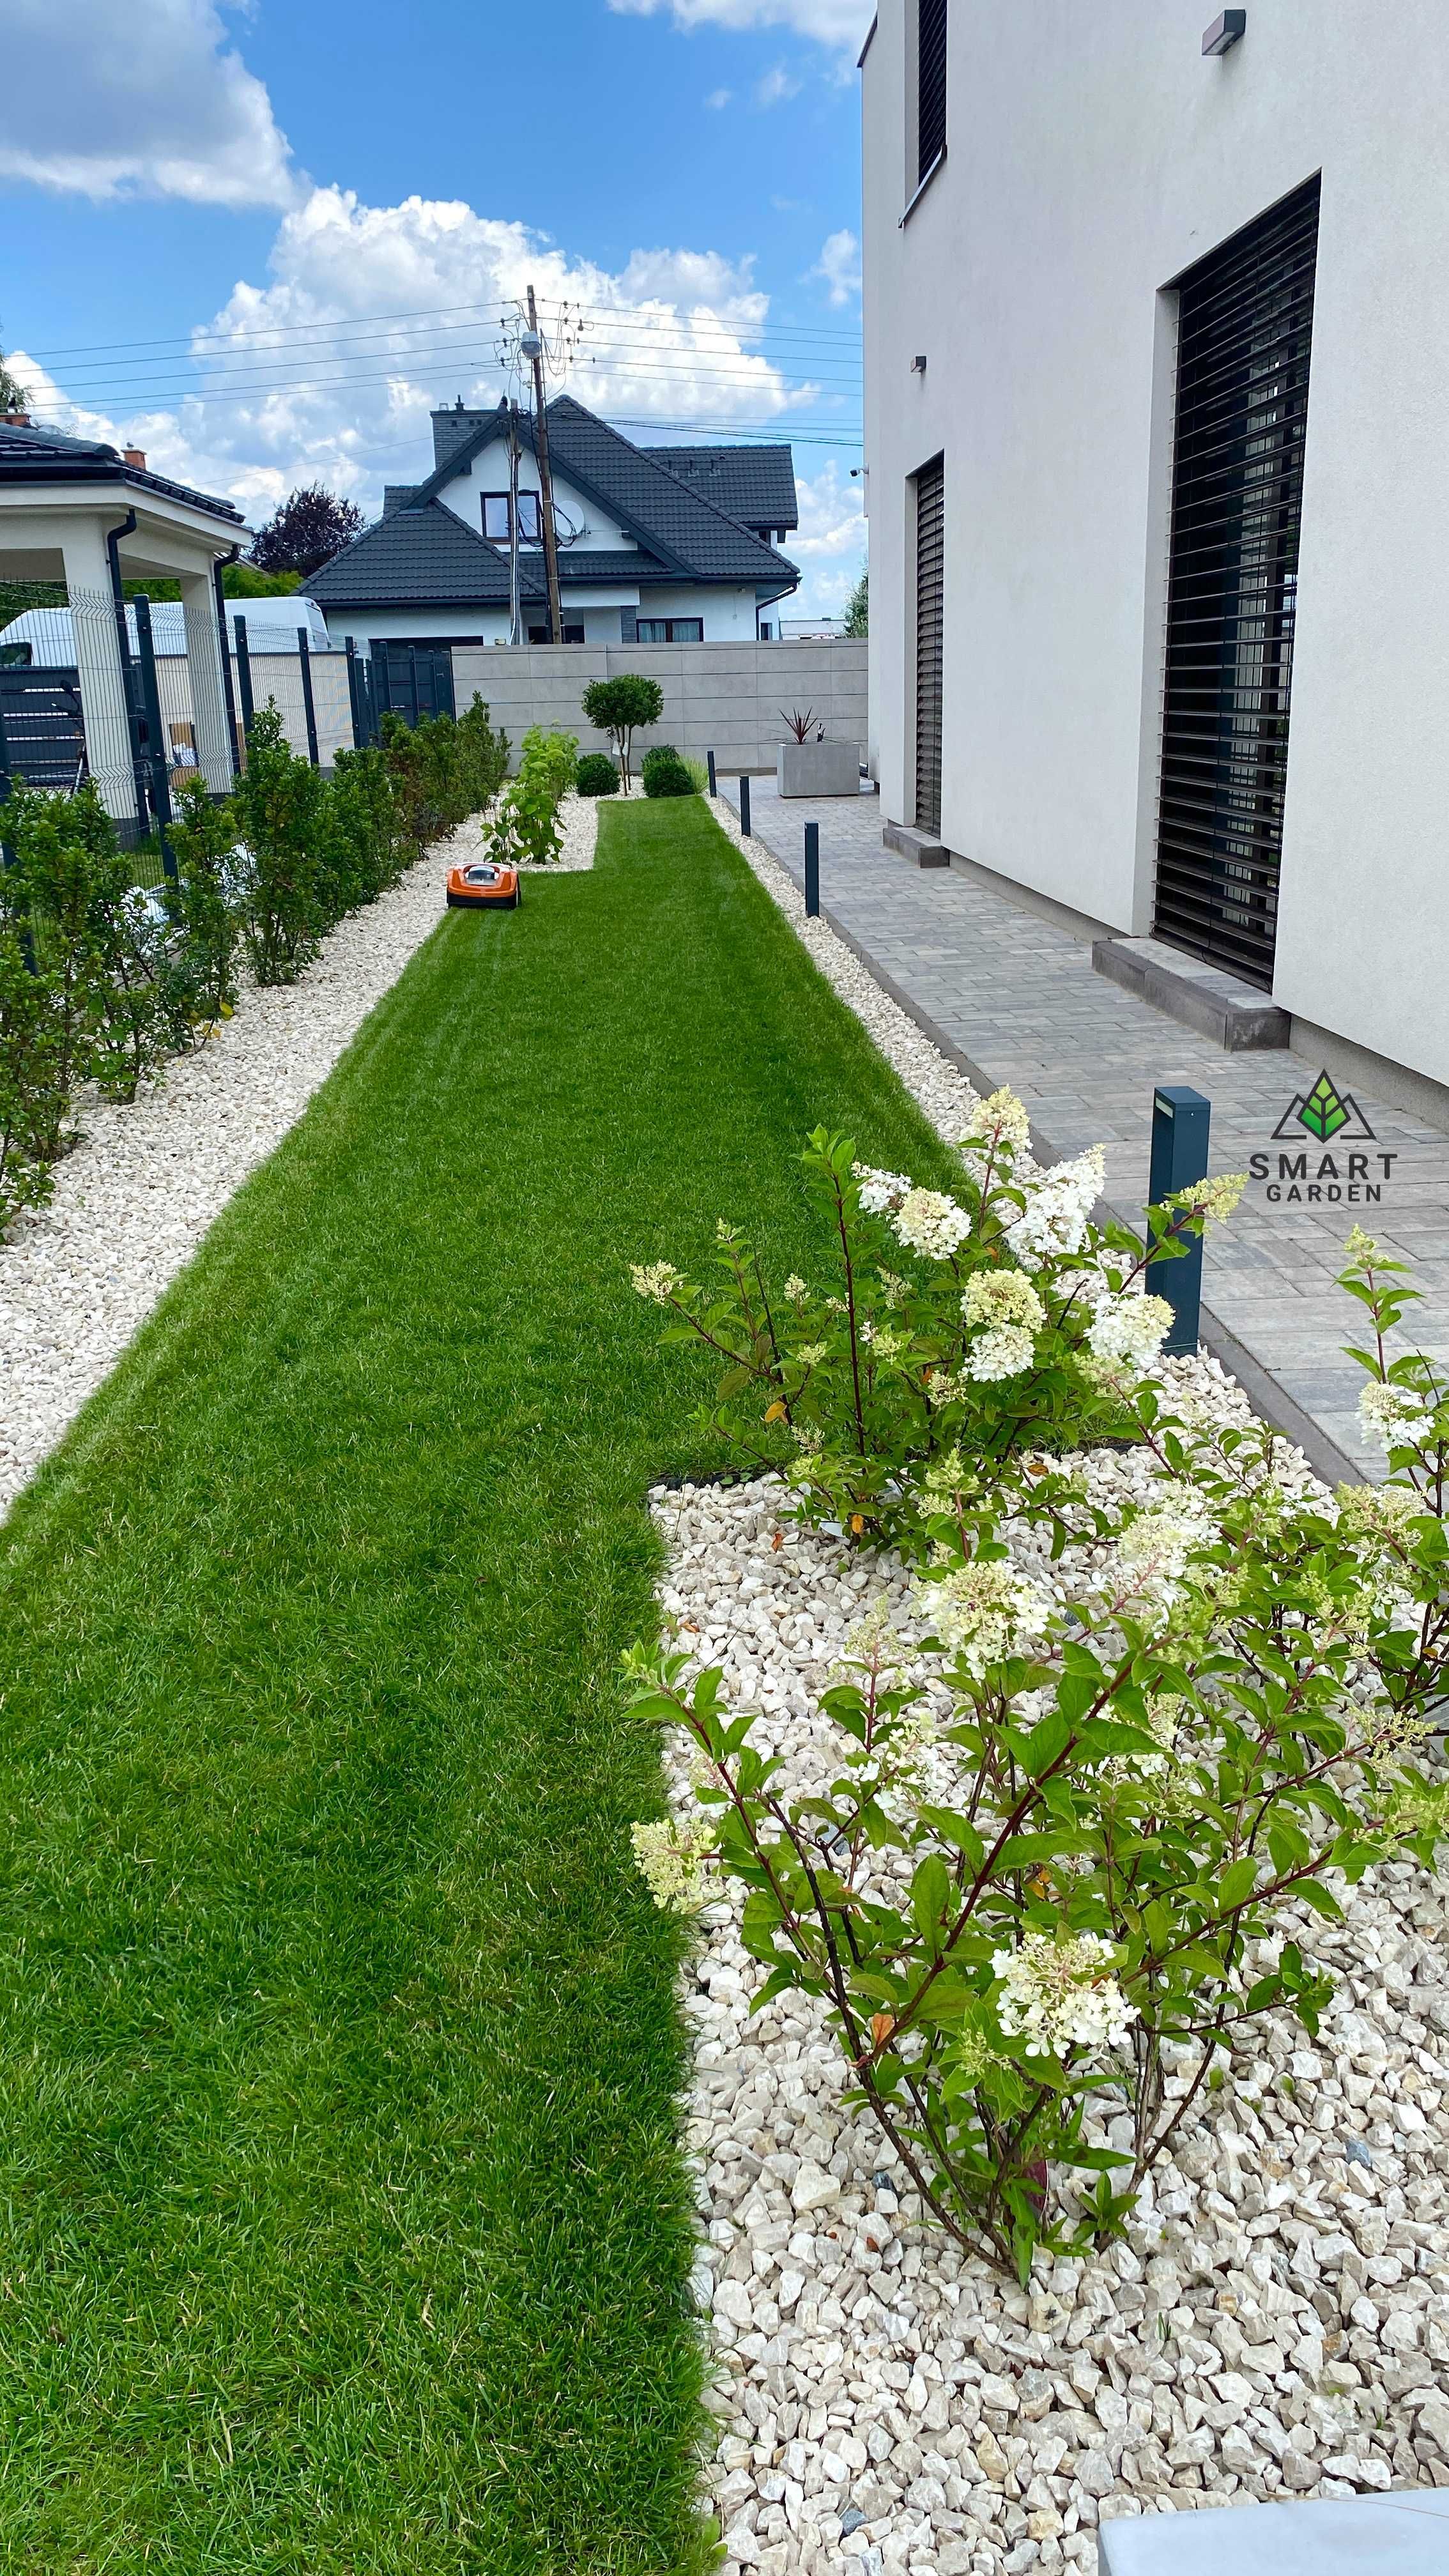 Ogrodnik - Usługi ogrodnicze - Smart Garden - Ogrody/KRÓTKIE TERMINY